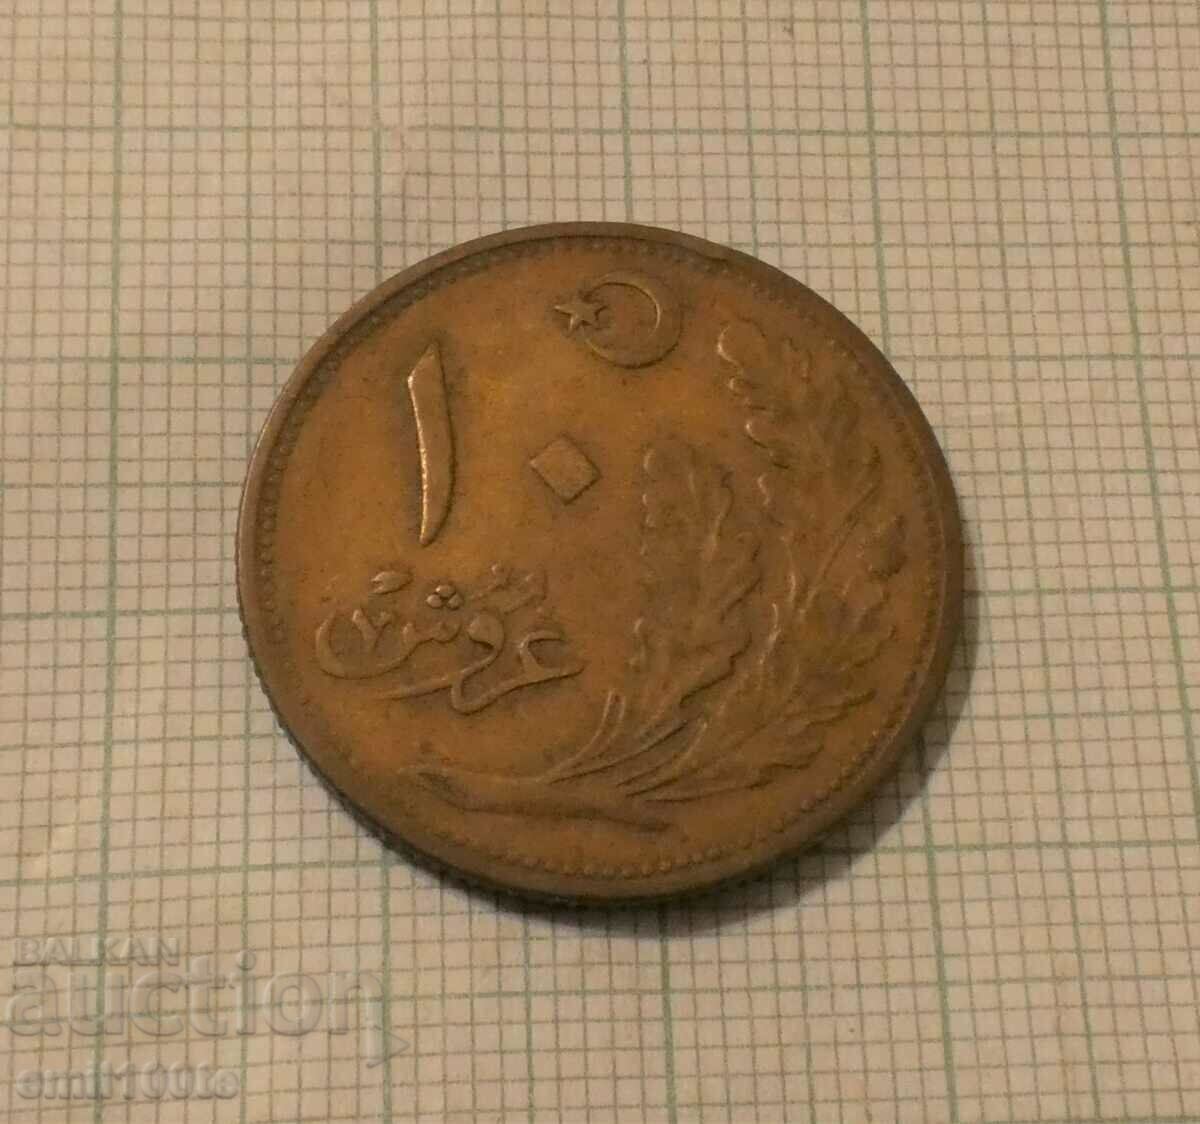 Рядка монета 10 куруш 1341 по хиджра  - 1922 / 1923 г Турция